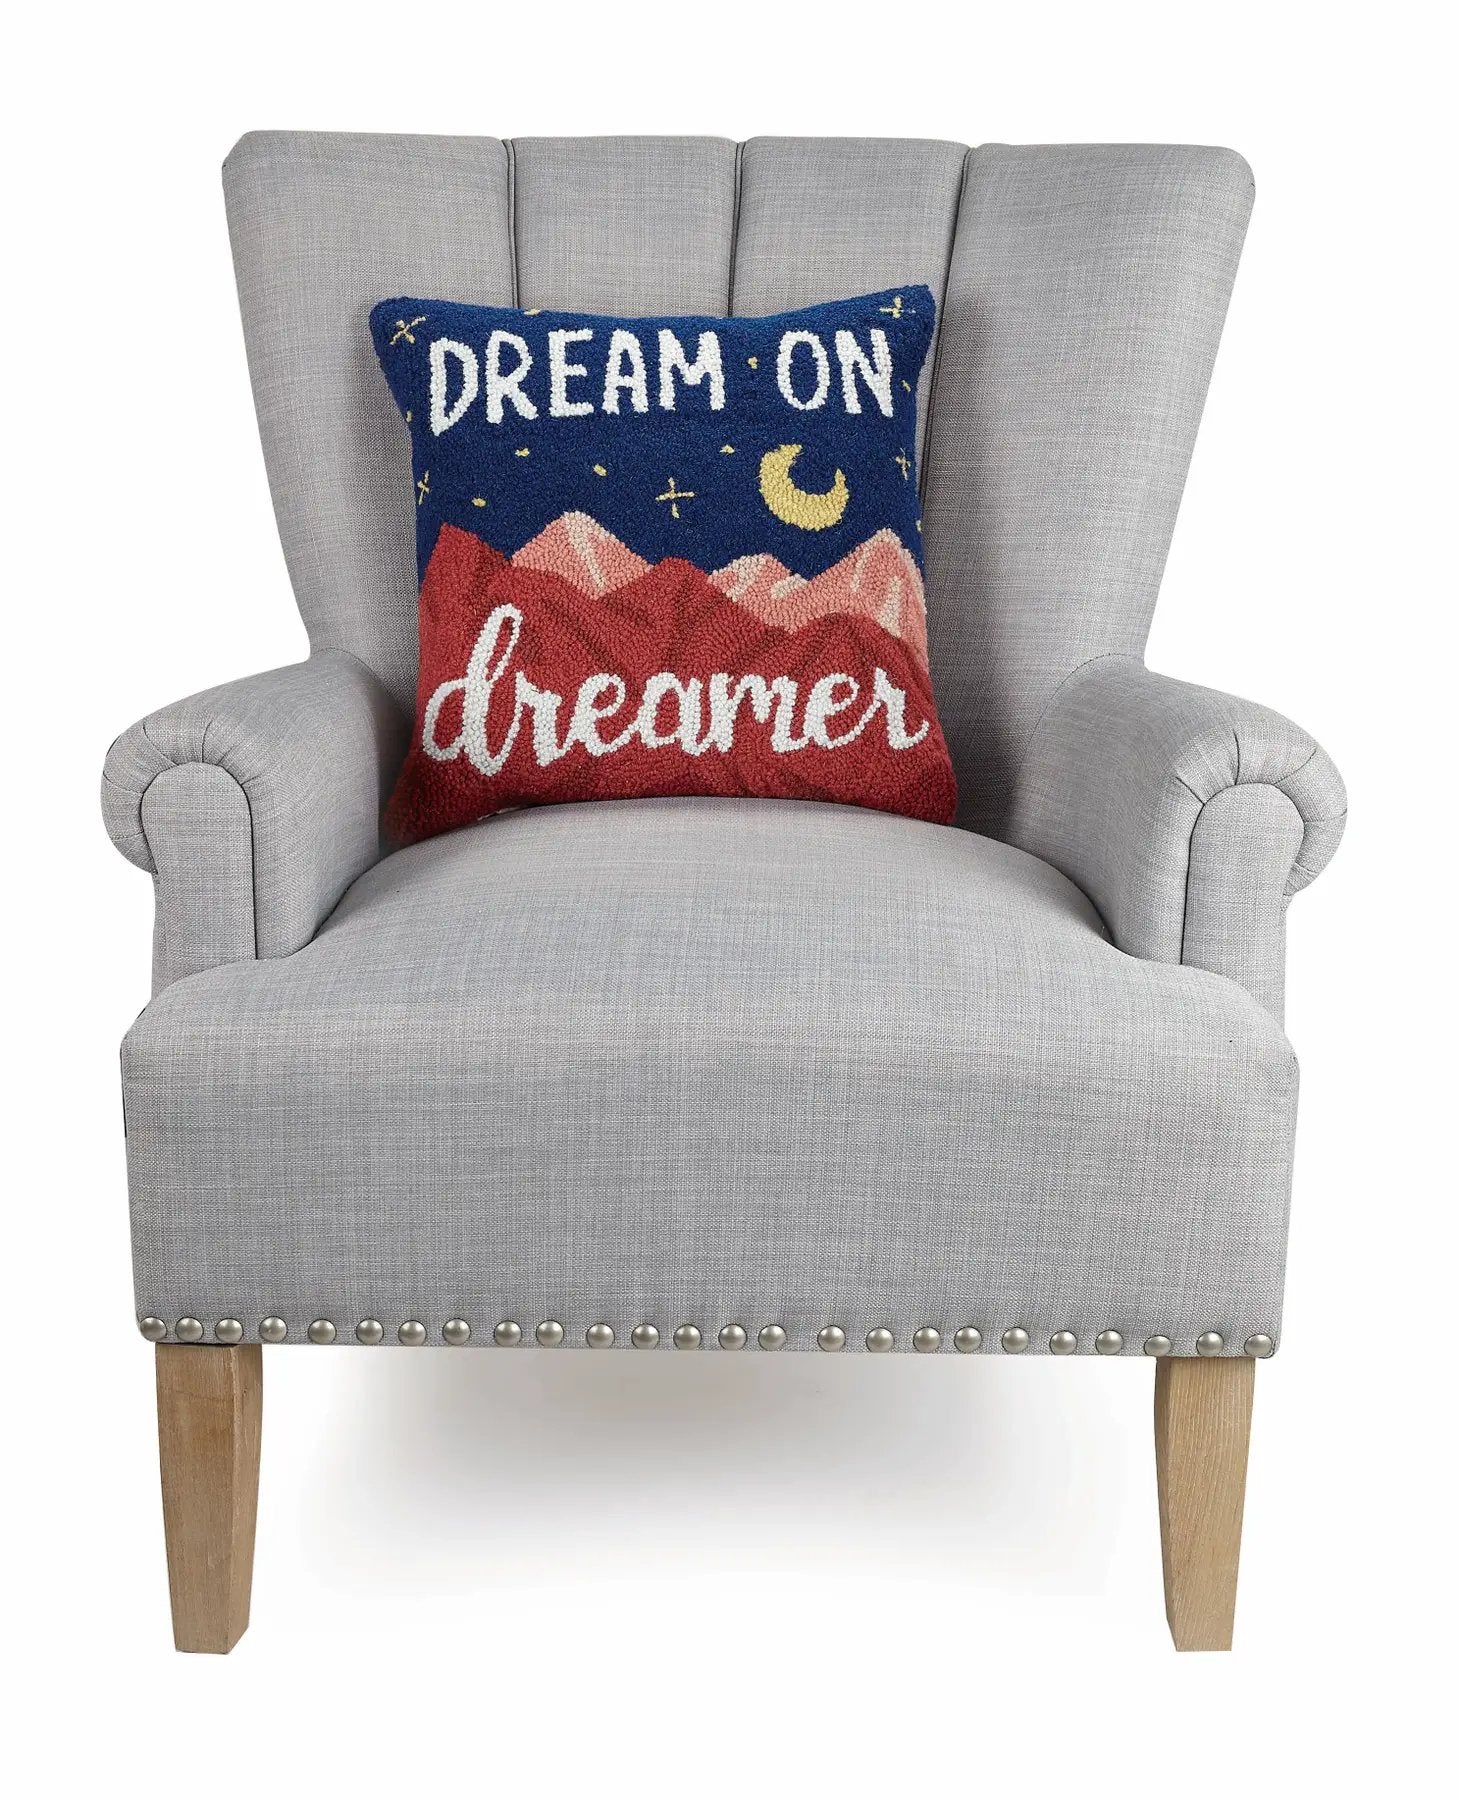 Dream On Dreamer Hook Pillow - Pillows